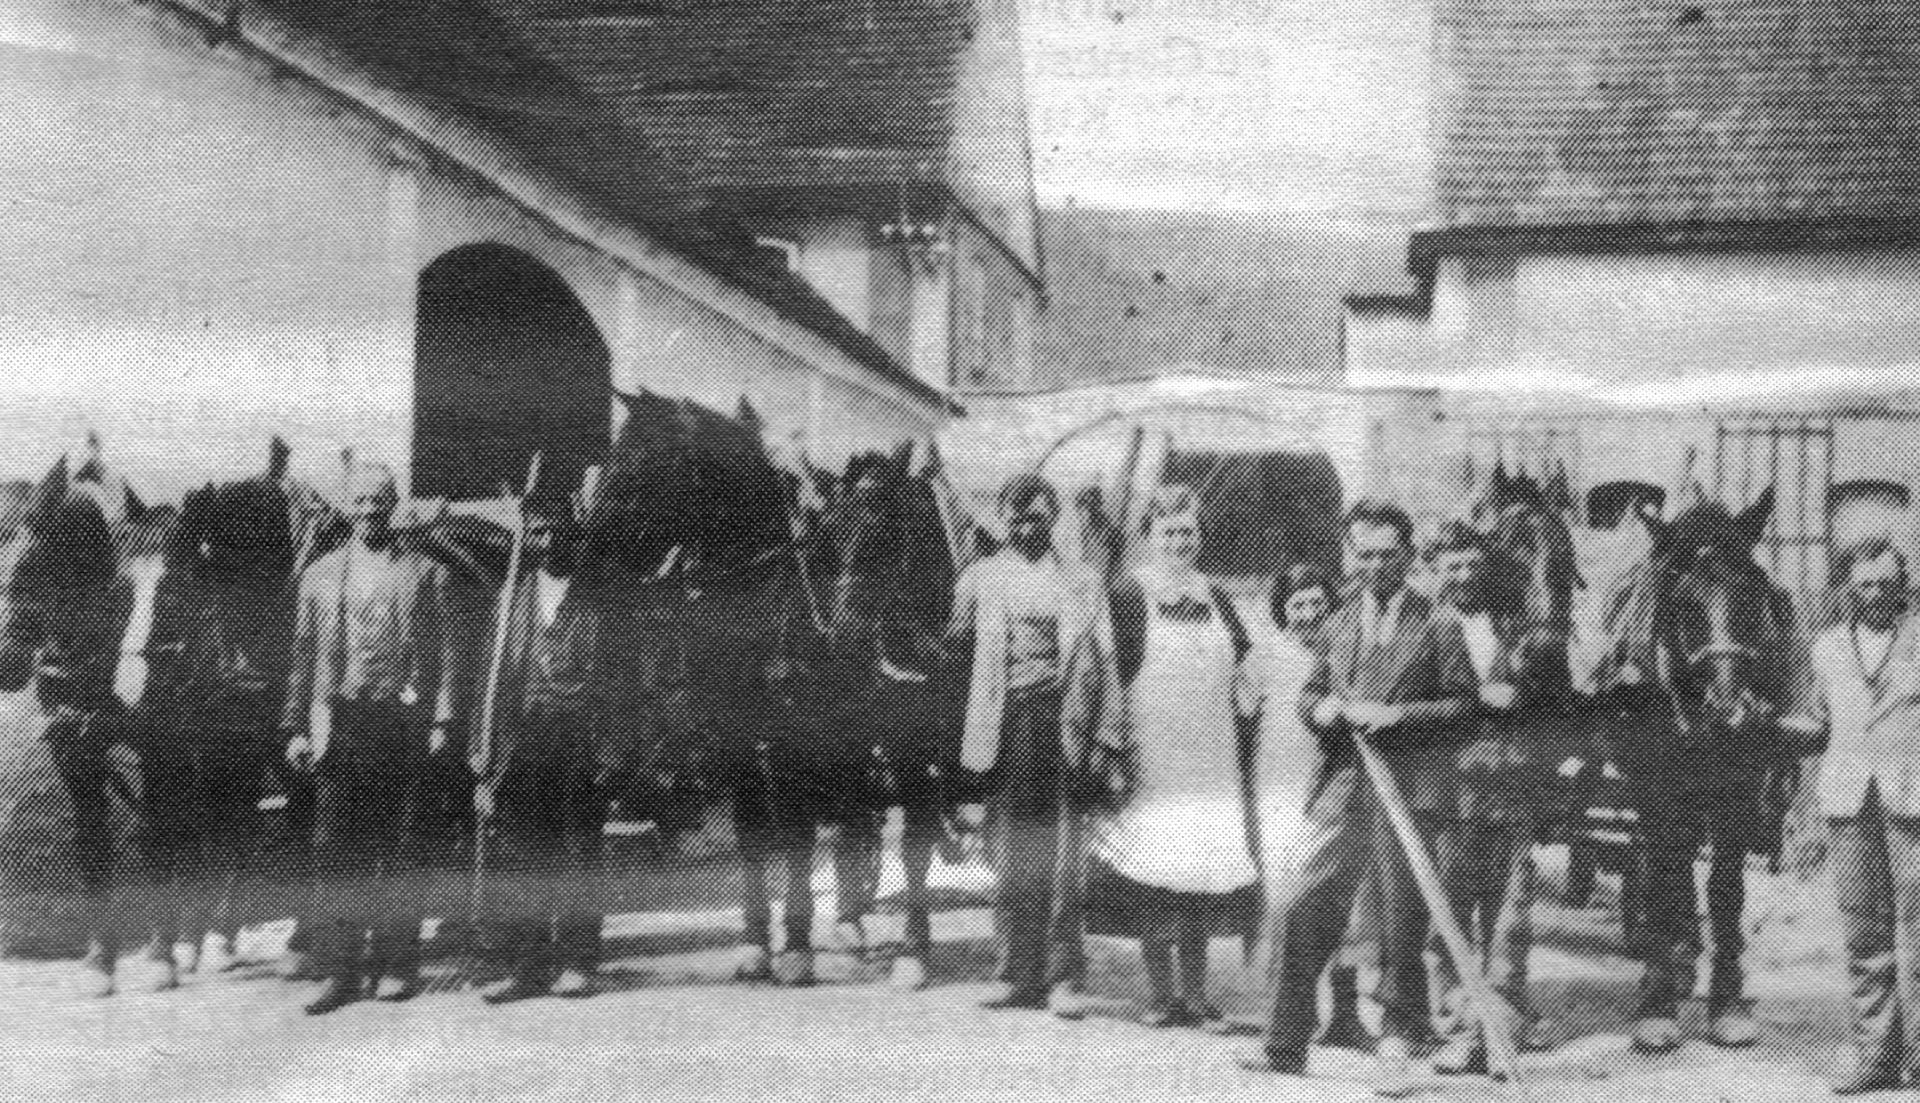 Tři členové rodiny Schuh před branou svého statku v Přibenicích /Pschibenz/, rok 1937, zdroj: Heimatstube Podersam – Jechnitz in Kronach